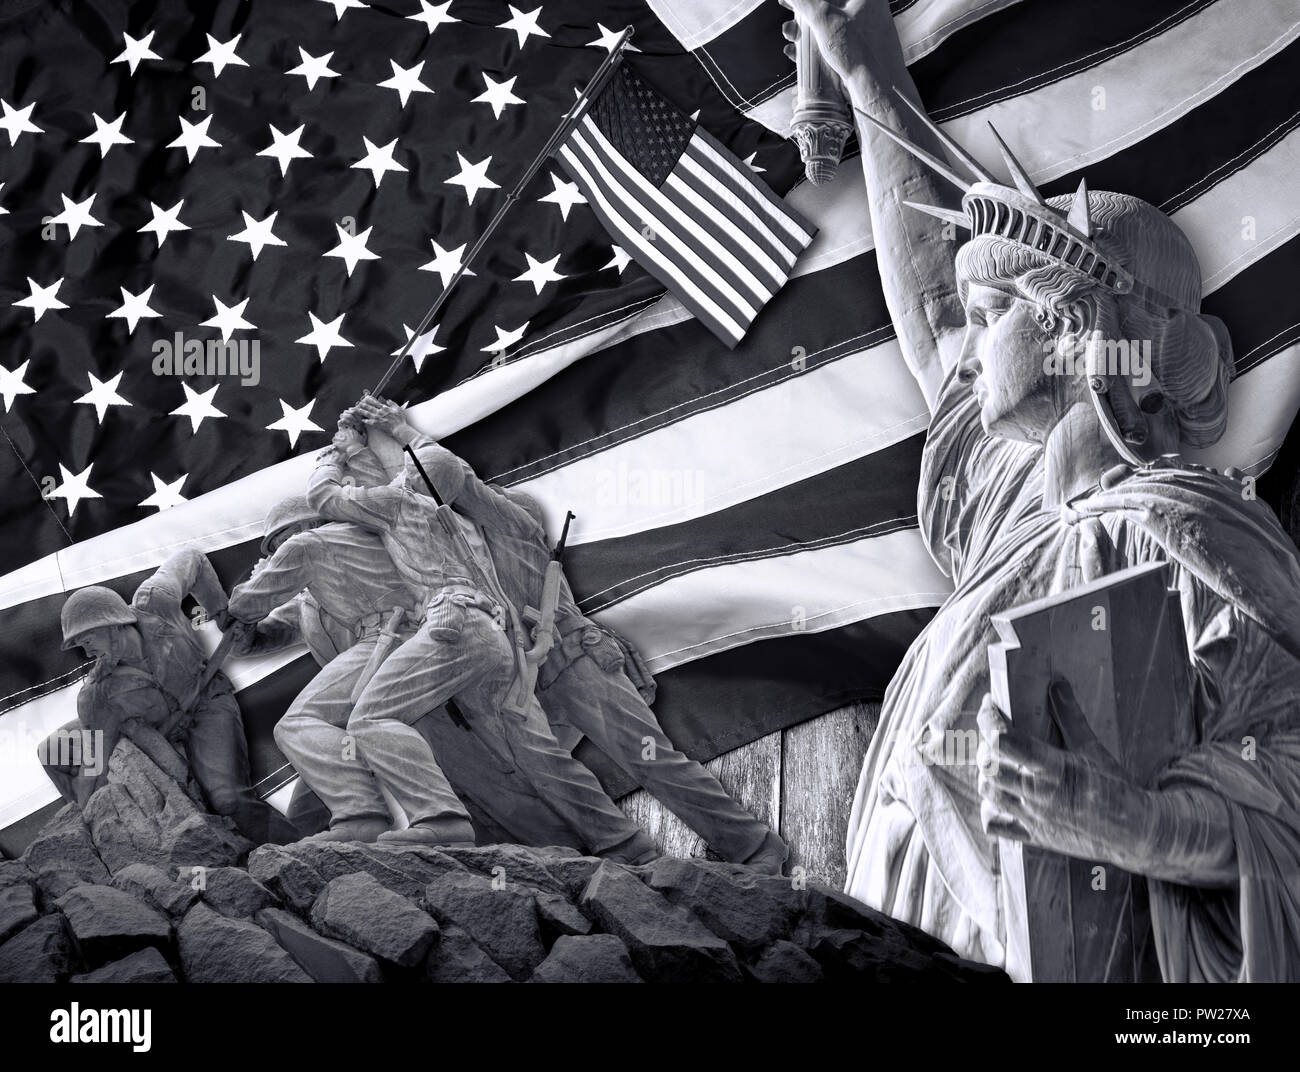 La voie américaine avec la liberté de tous en noir et blanc. Banque D'Images